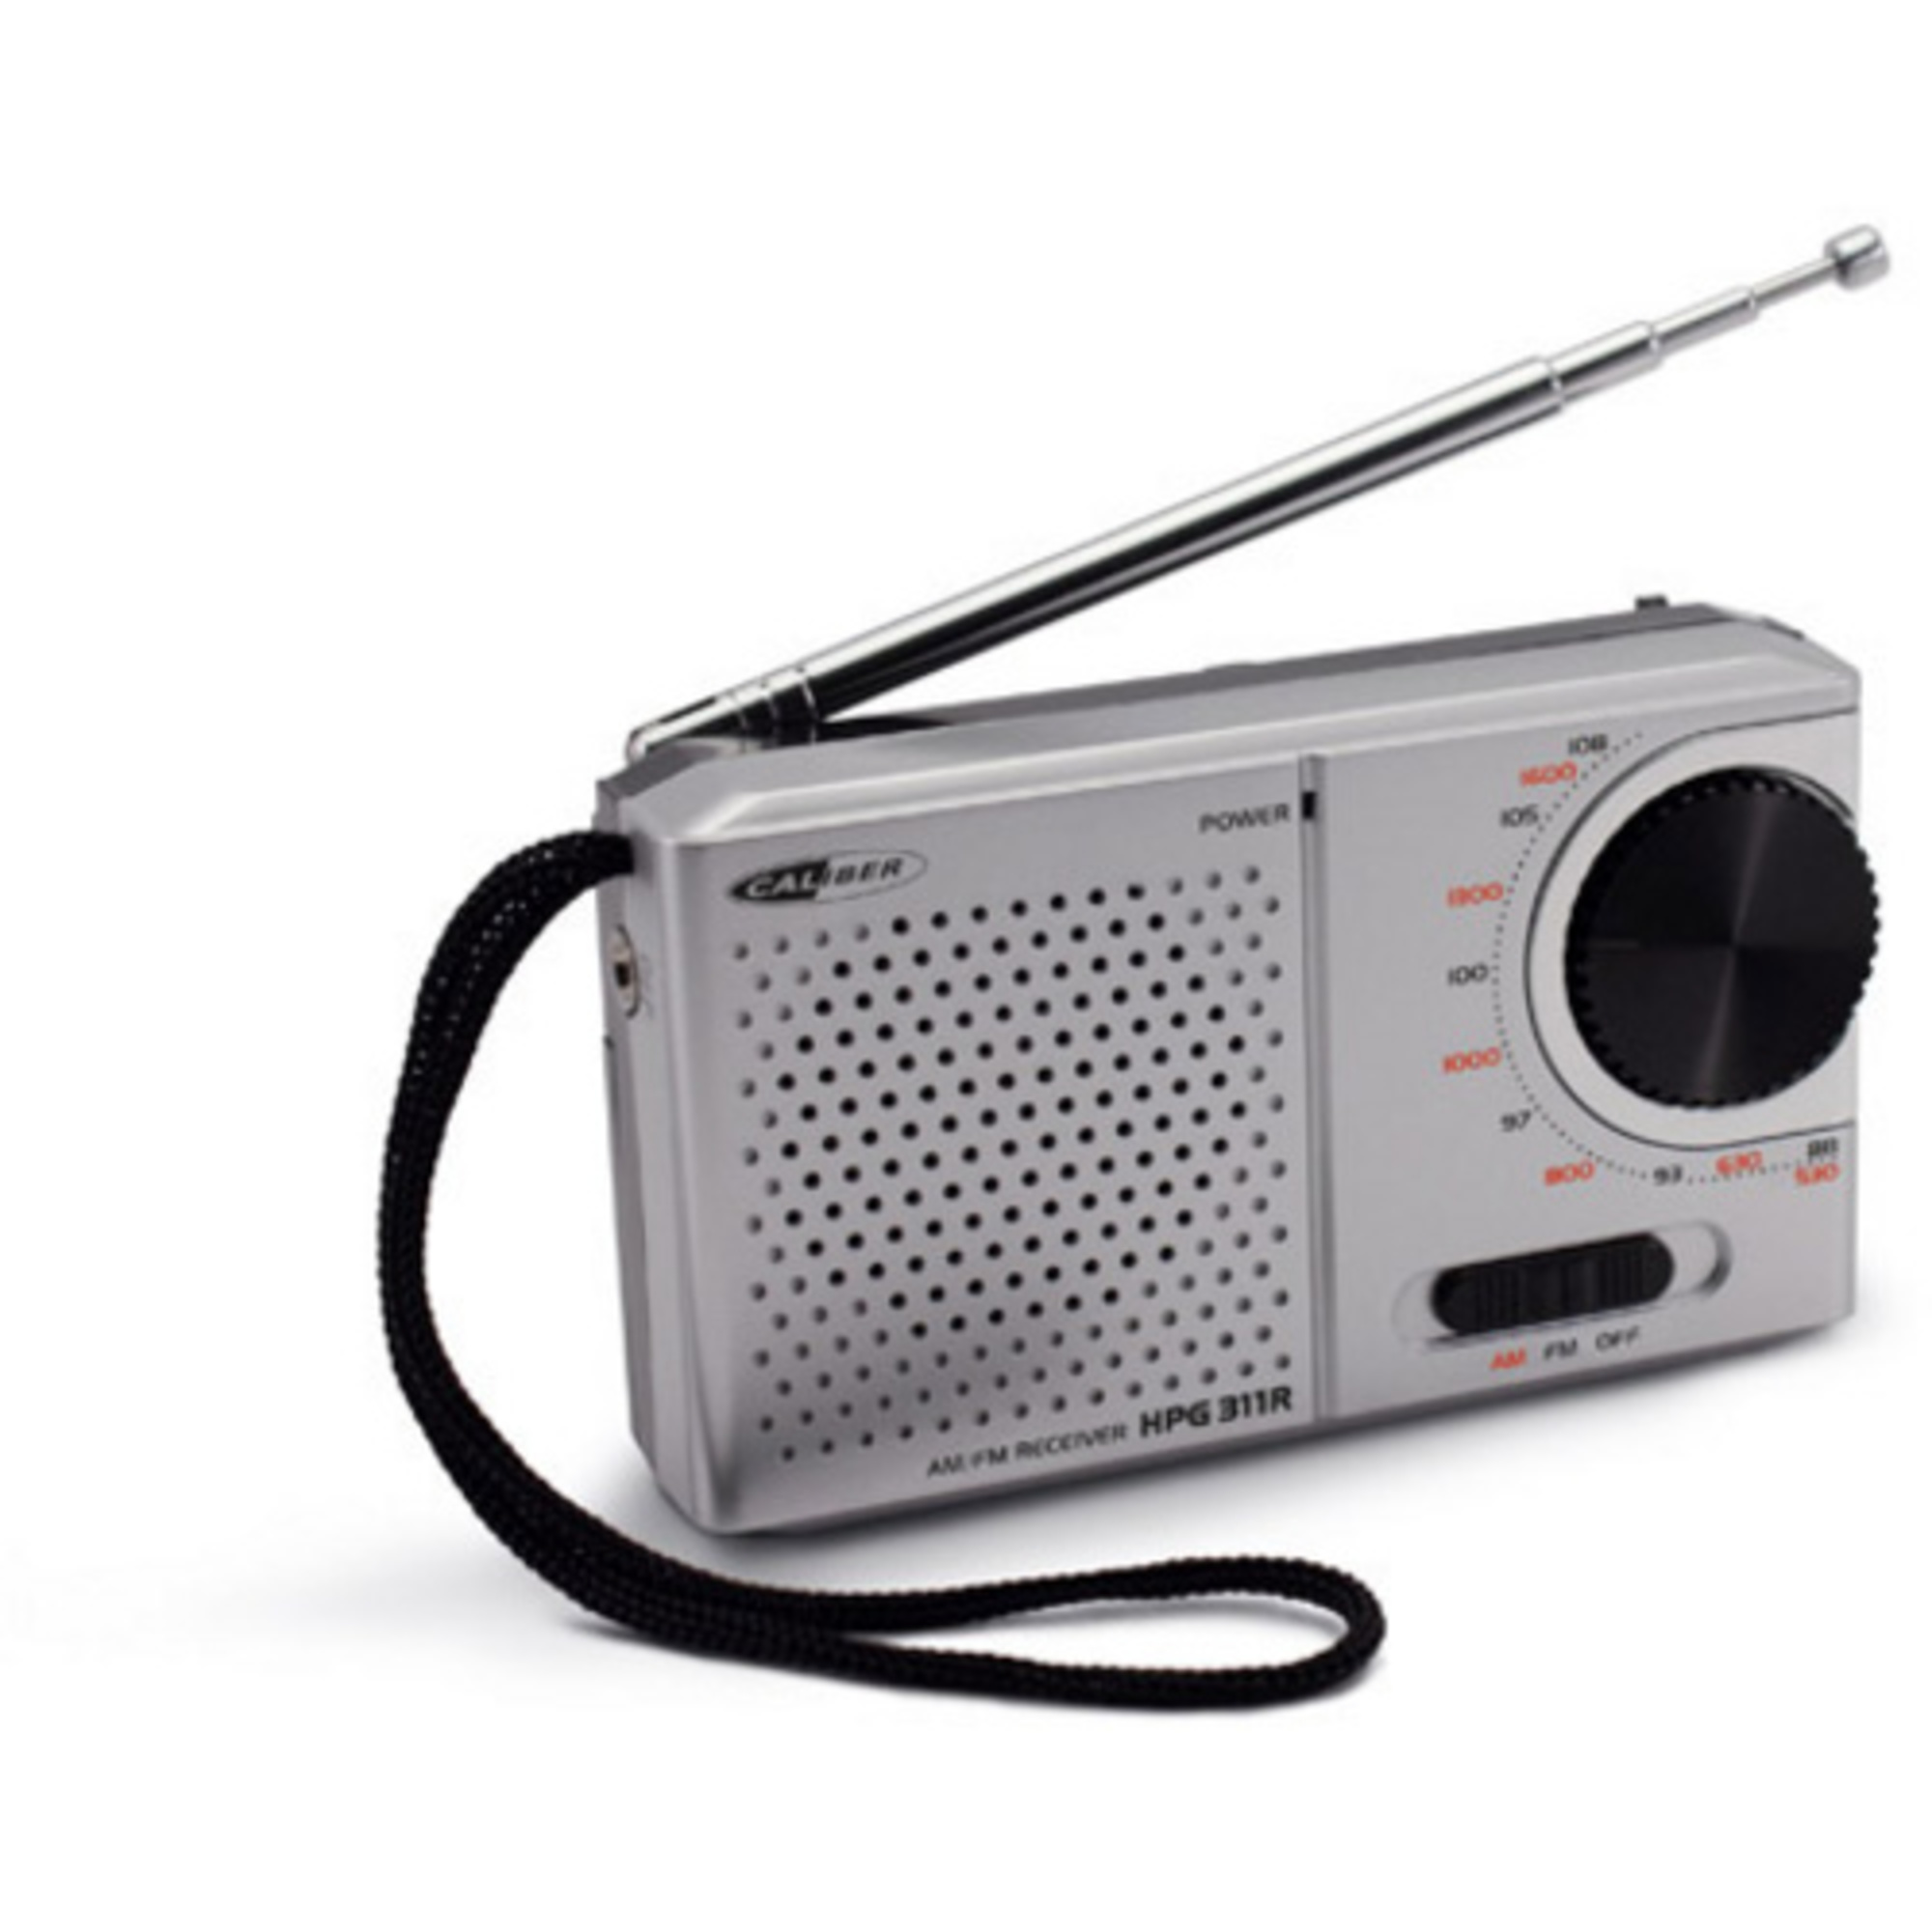 Silbrig FM, AM, HPG311R Radio, Tragbares CALIBER